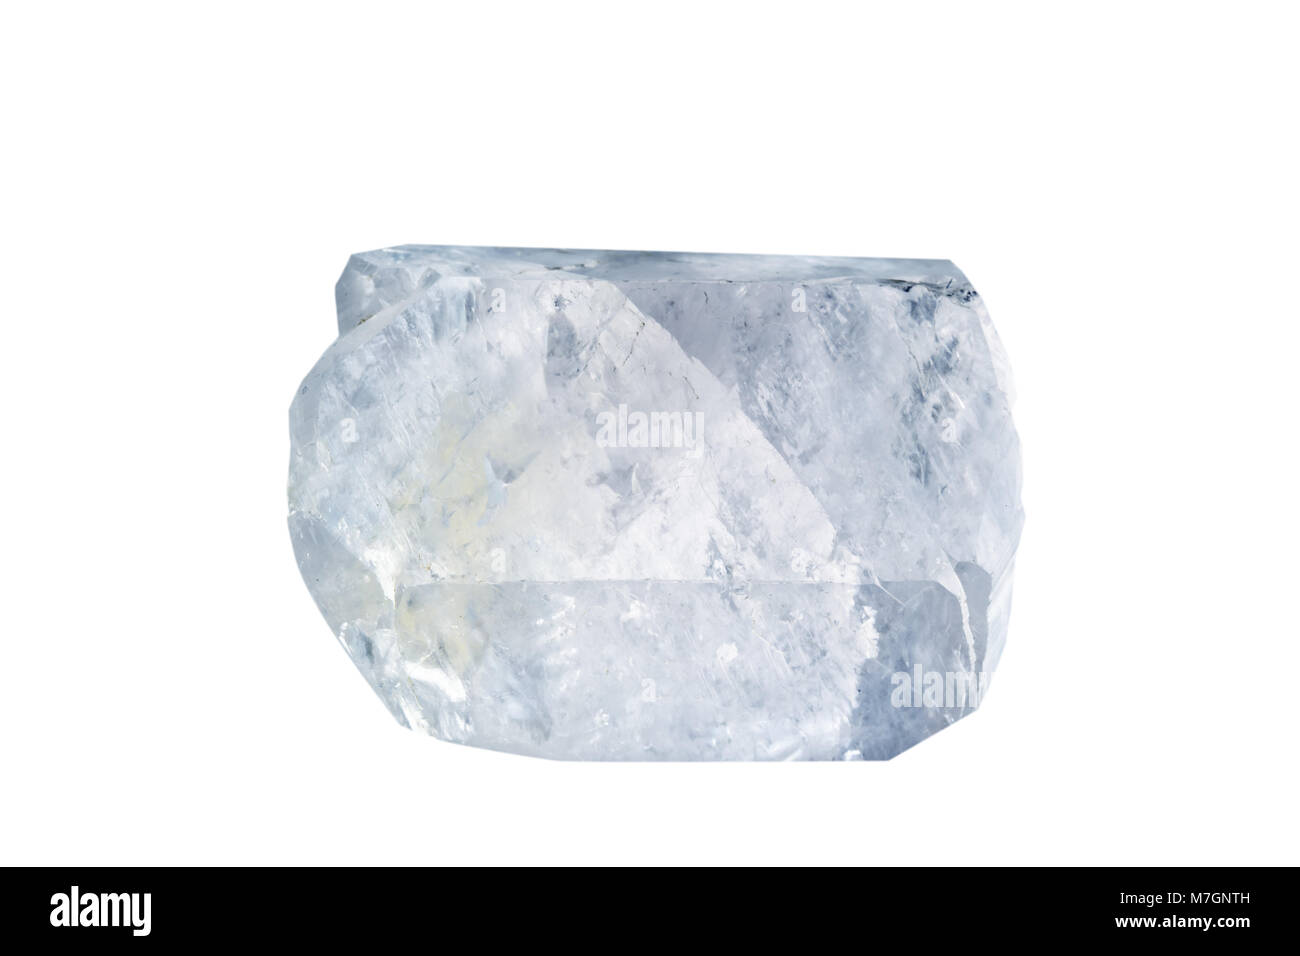 Makroaufnahmen von natürlichen Edelstein. Das rohe mineral Calcit. Isoliertes Objekt auf einem weißen Hintergrund. Stockfoto